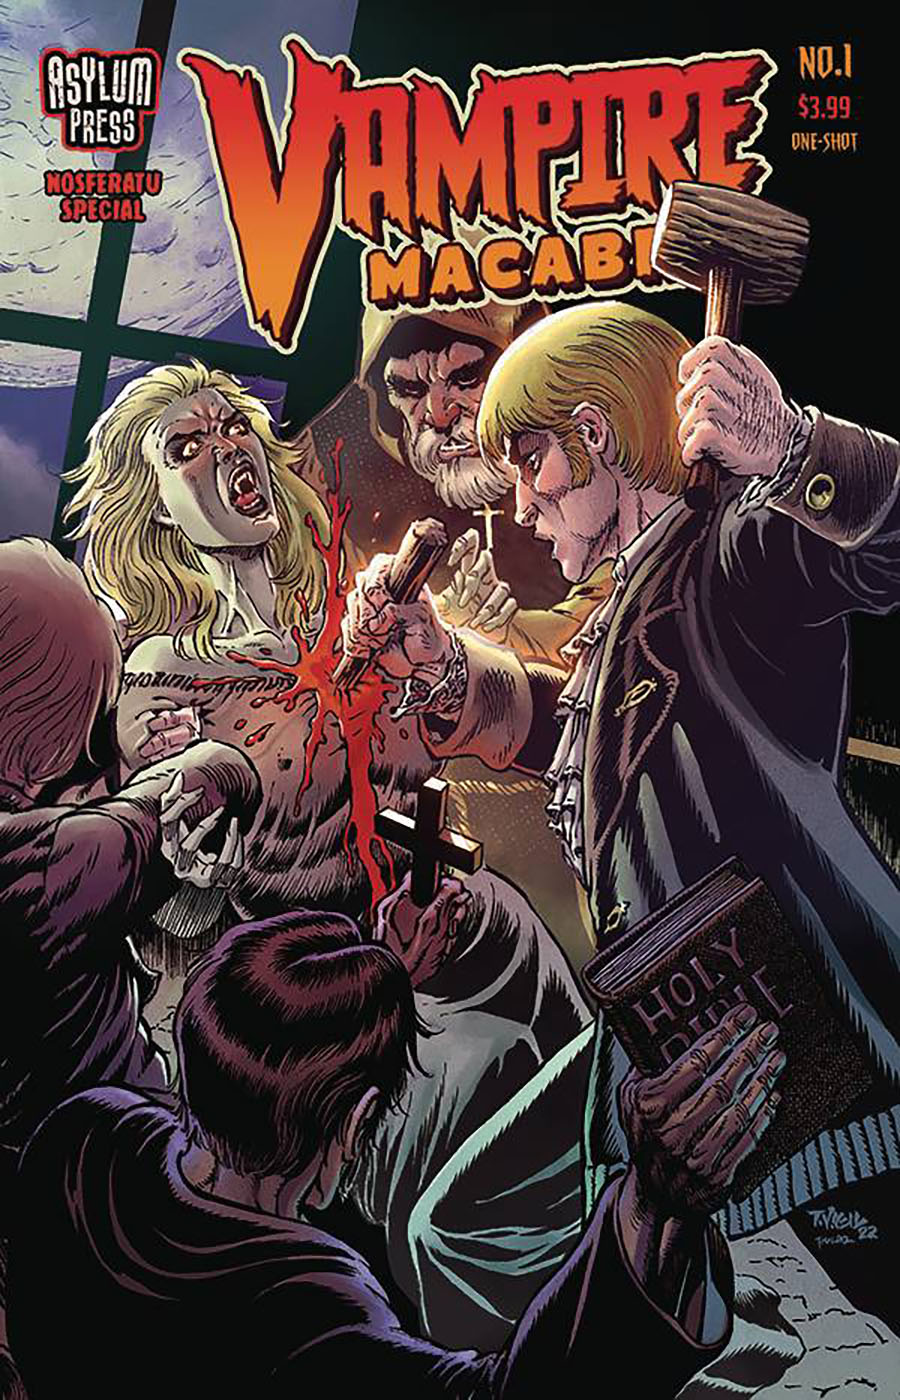 Vampire Macabre Nosferatu #1 (One Shot) Cover A Regular Tim Vigil Cover